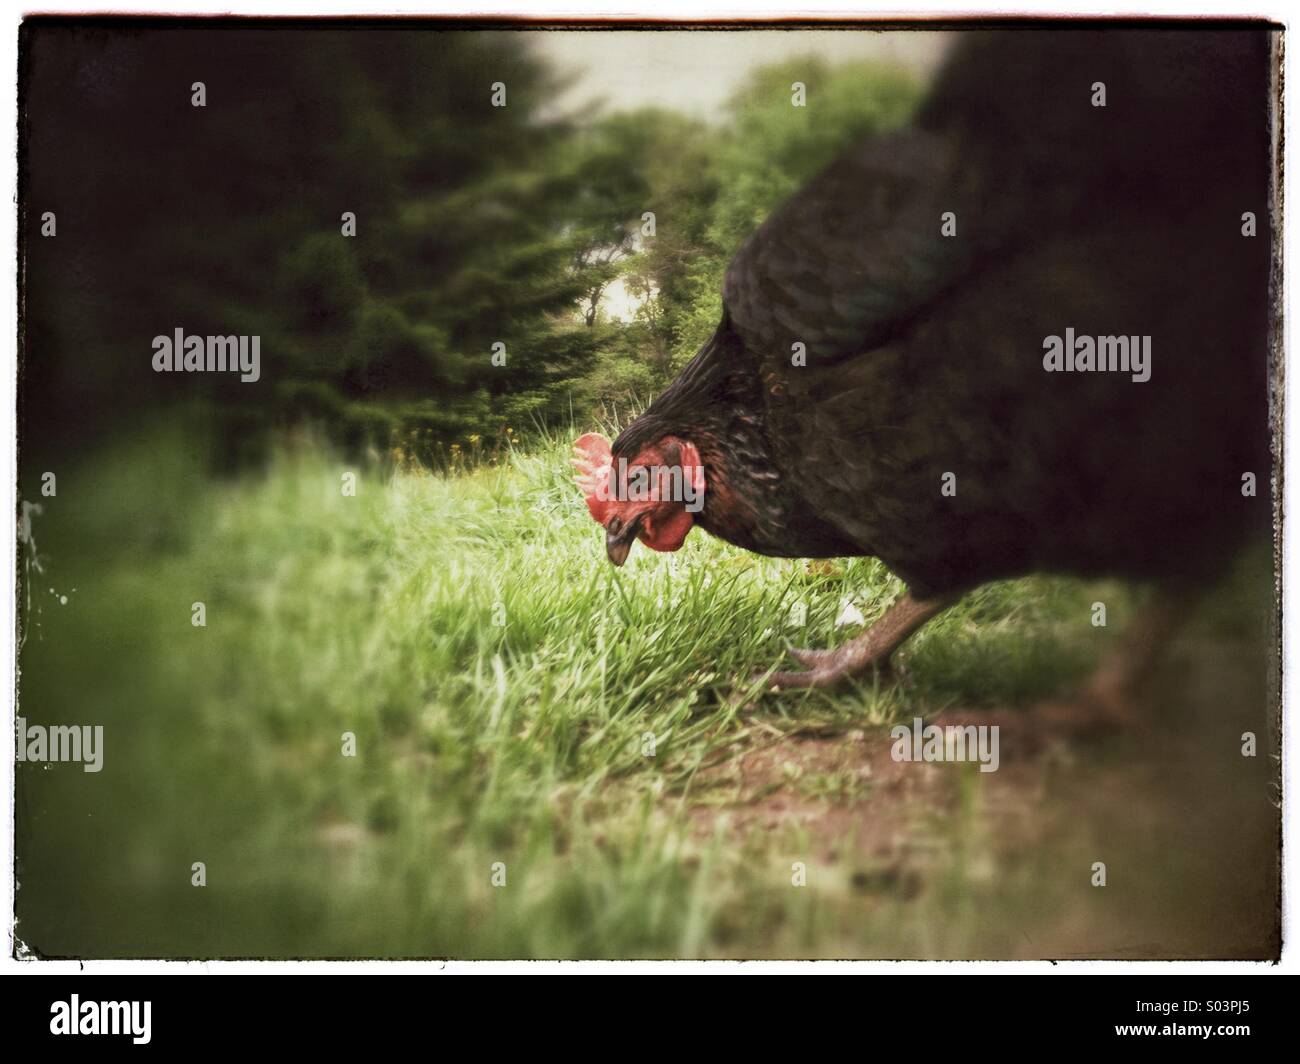 Vue rapprochée de poule poulet picorant le sol in grassy field Banque D'Images